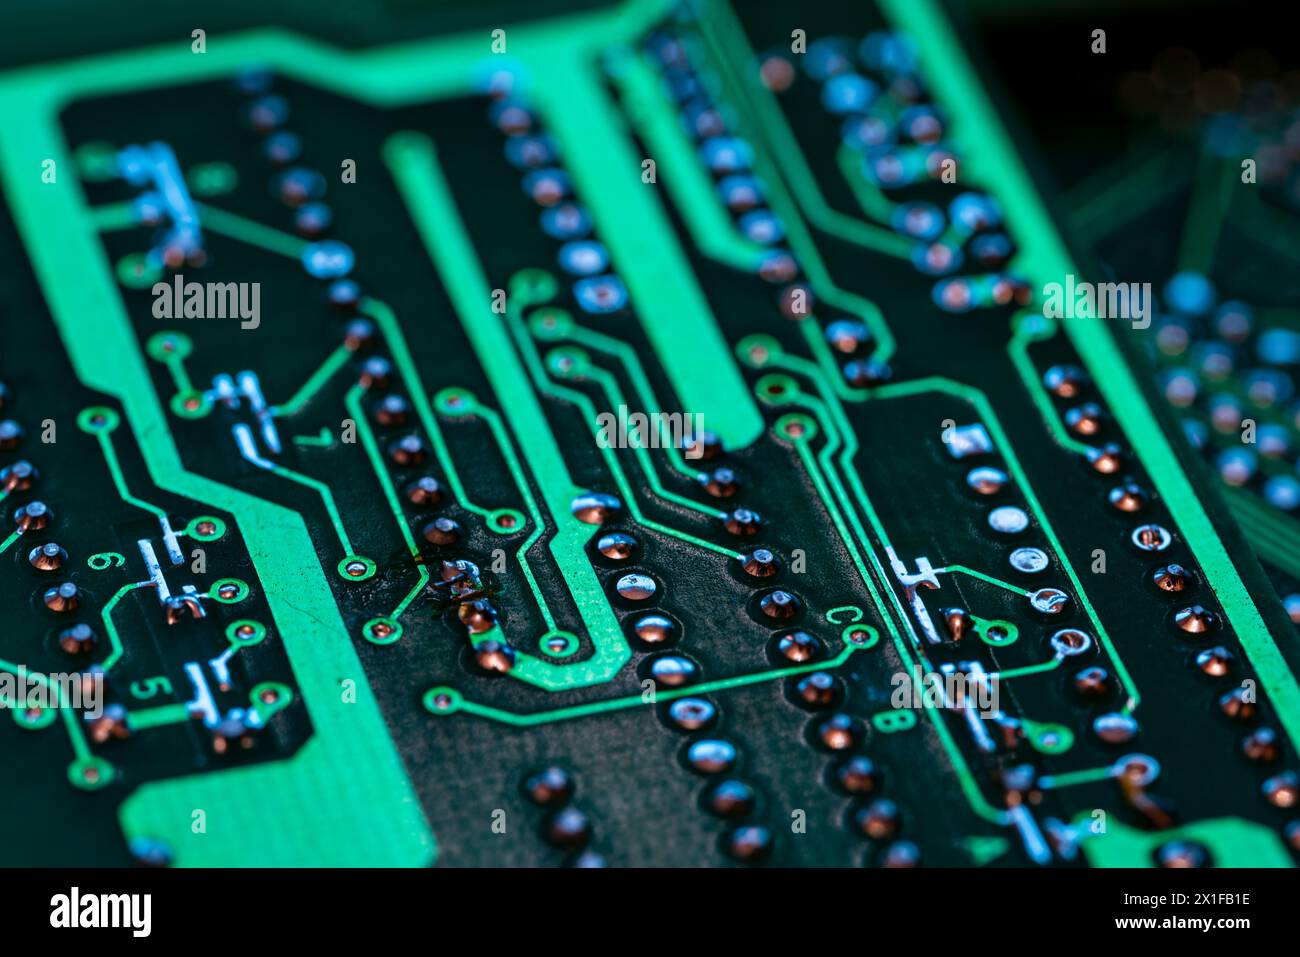 Detalle de múltiples de circuitos impresos de una placa electrónica de color verde Stock Photo